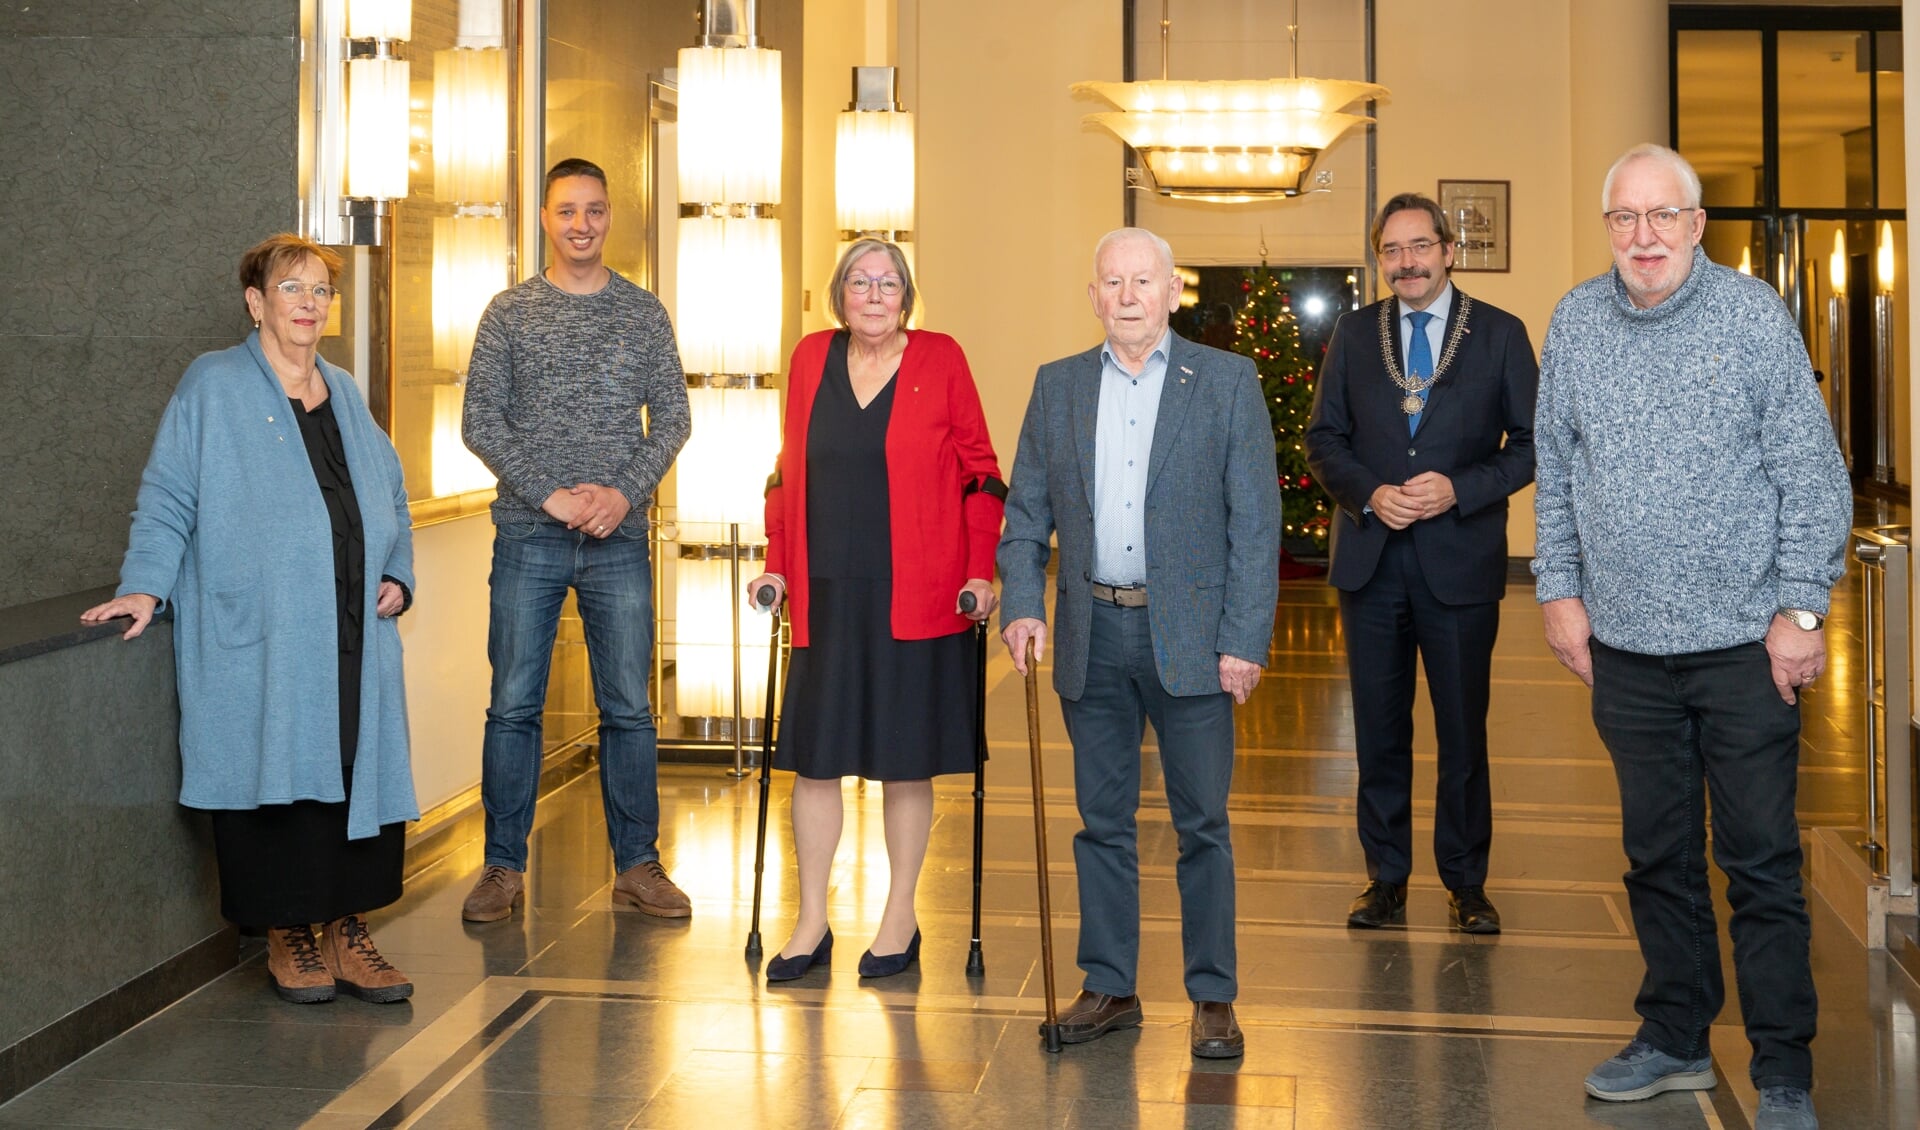 Kitty Veenstra, Martijn de Lange, Els Santing, Harry Smit, burgemeester Theo Bovens en Willem Rosier in het stadhuis.